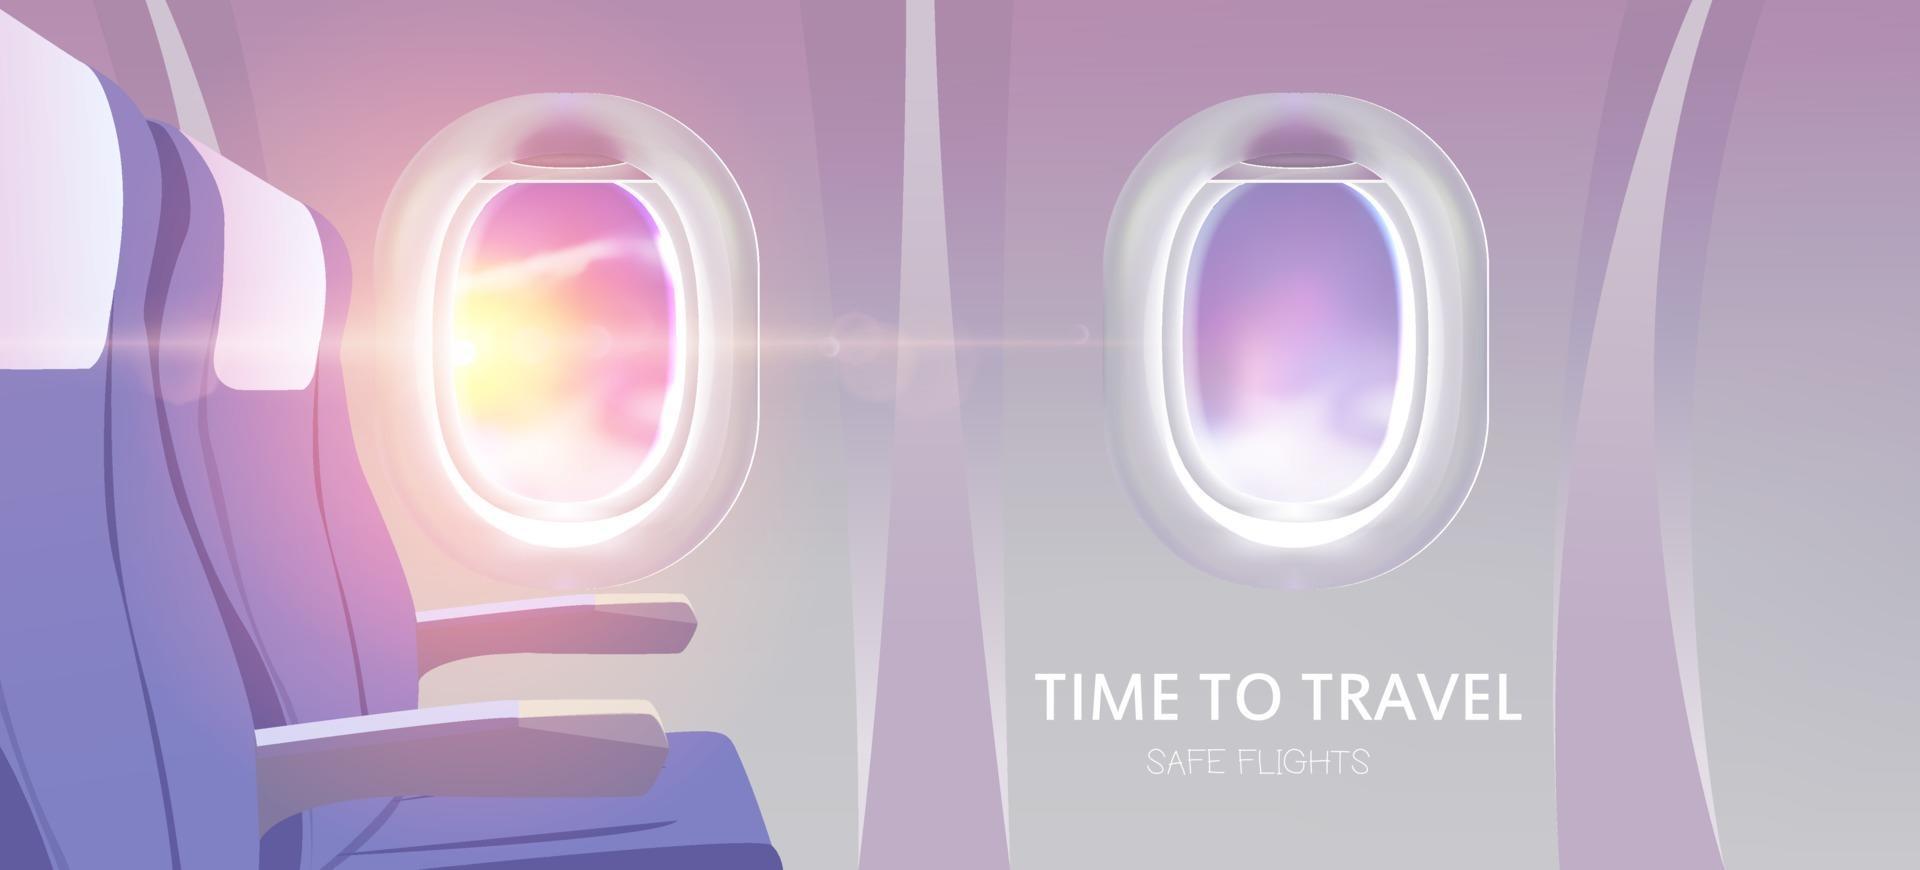 tijd om te reizen. weergave van vliegtuigreclame-ontwerpwebsite voor reizen. vector illustratie.